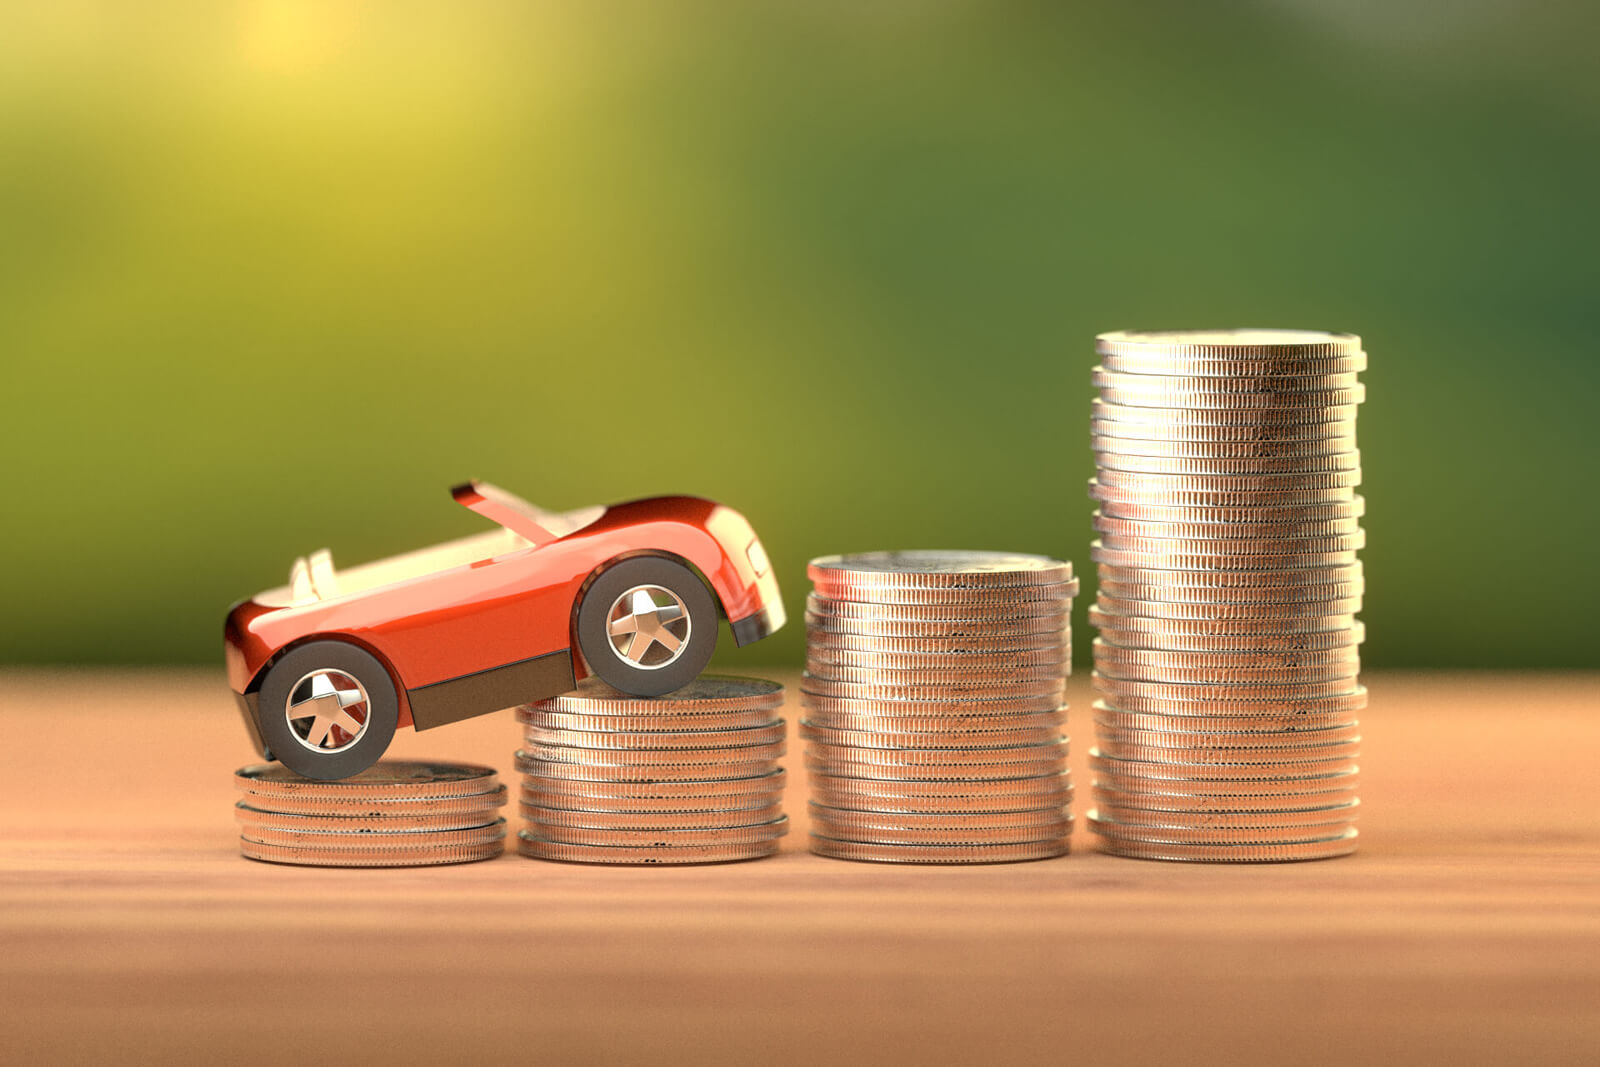 cbcf toy car climbing coins